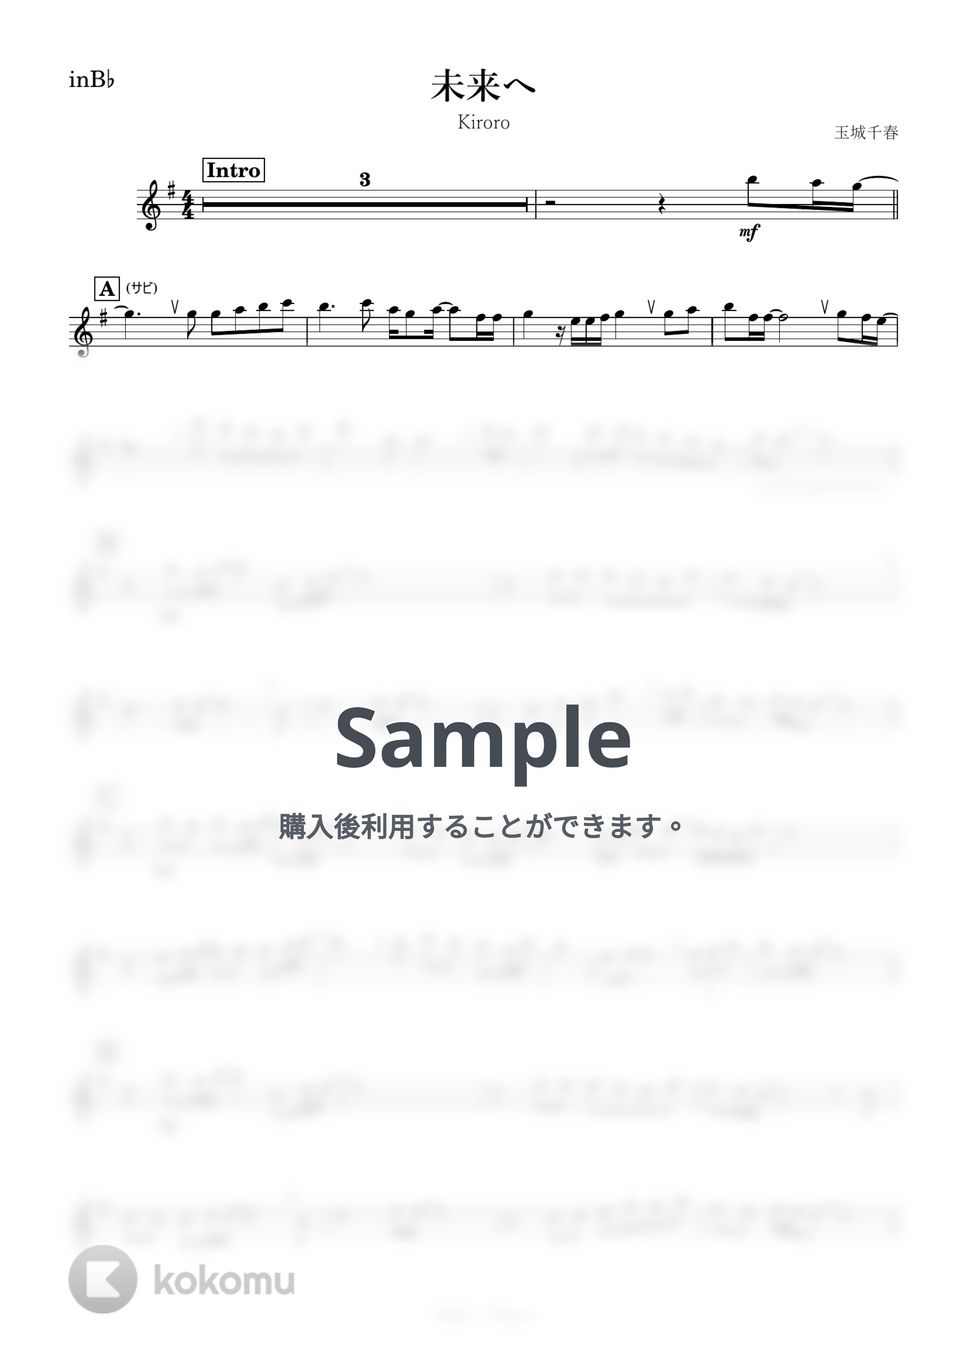 Kiroro - 未来へ (B♭) by kanamusic